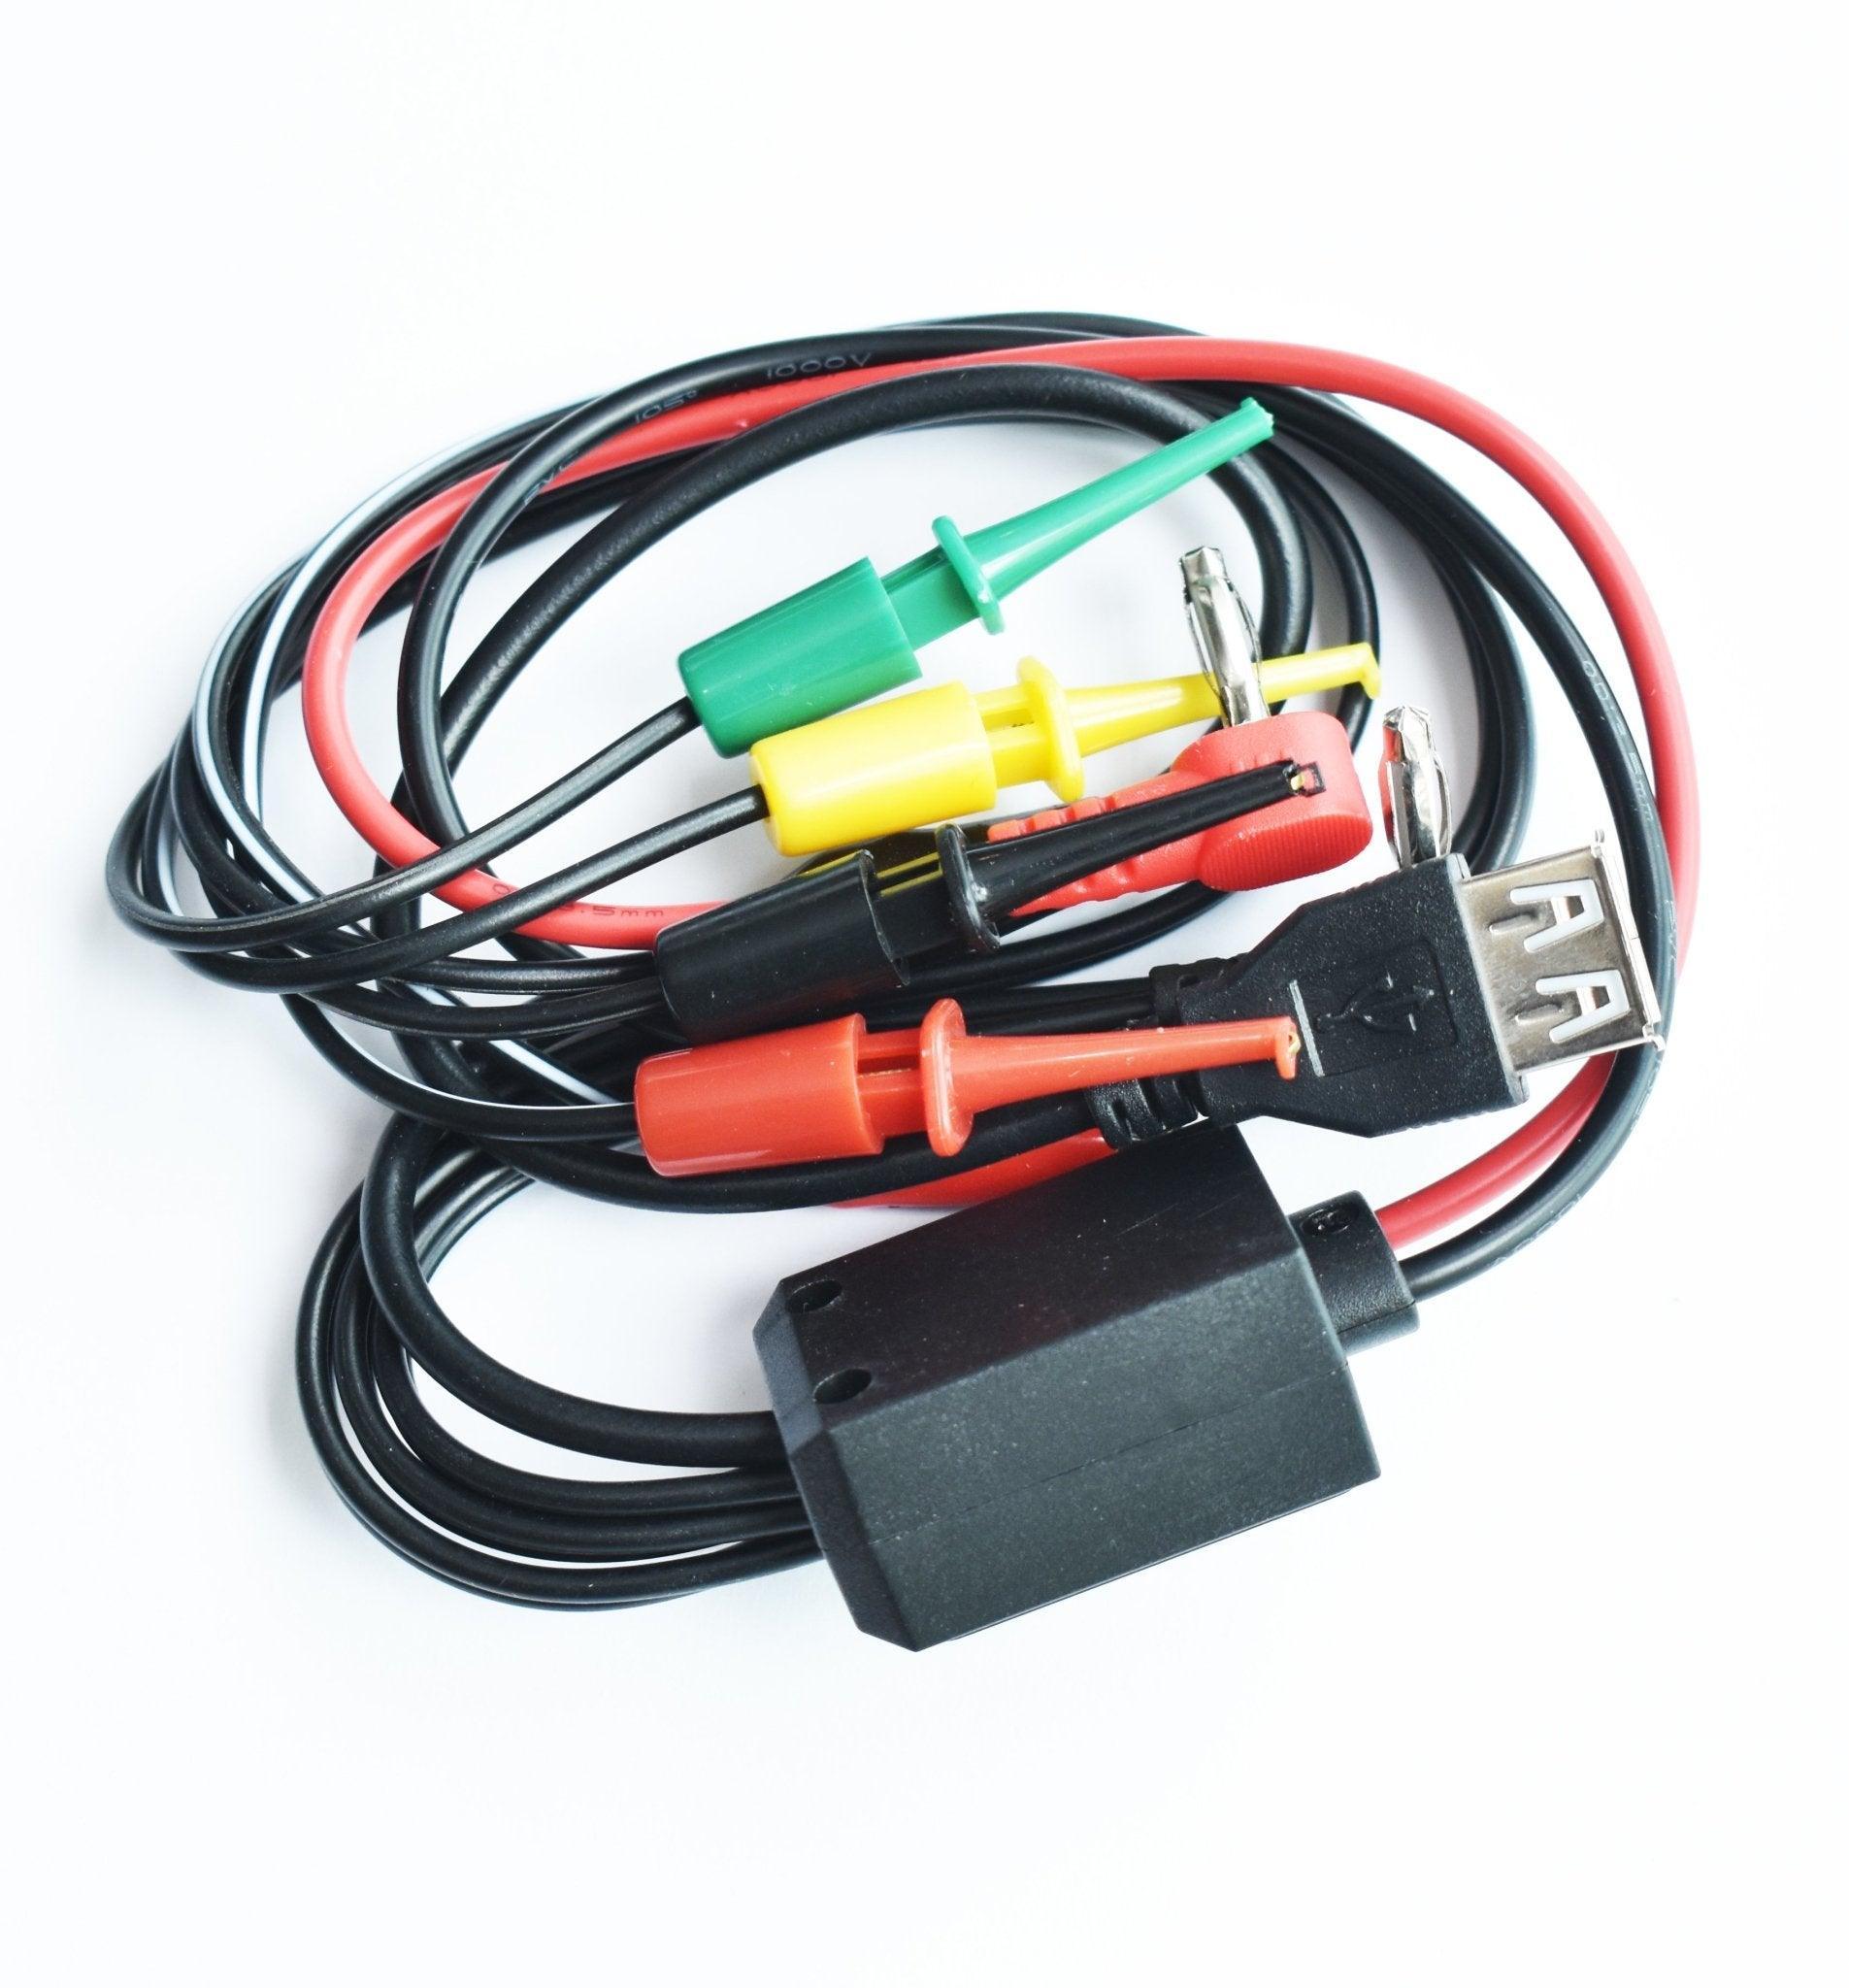 Cable Fuente Poder W10 Banana-Multipuntas. a solo $ 100.00 Refaccion y puestos celulares, refurbish y microelectronica.- FixOEM